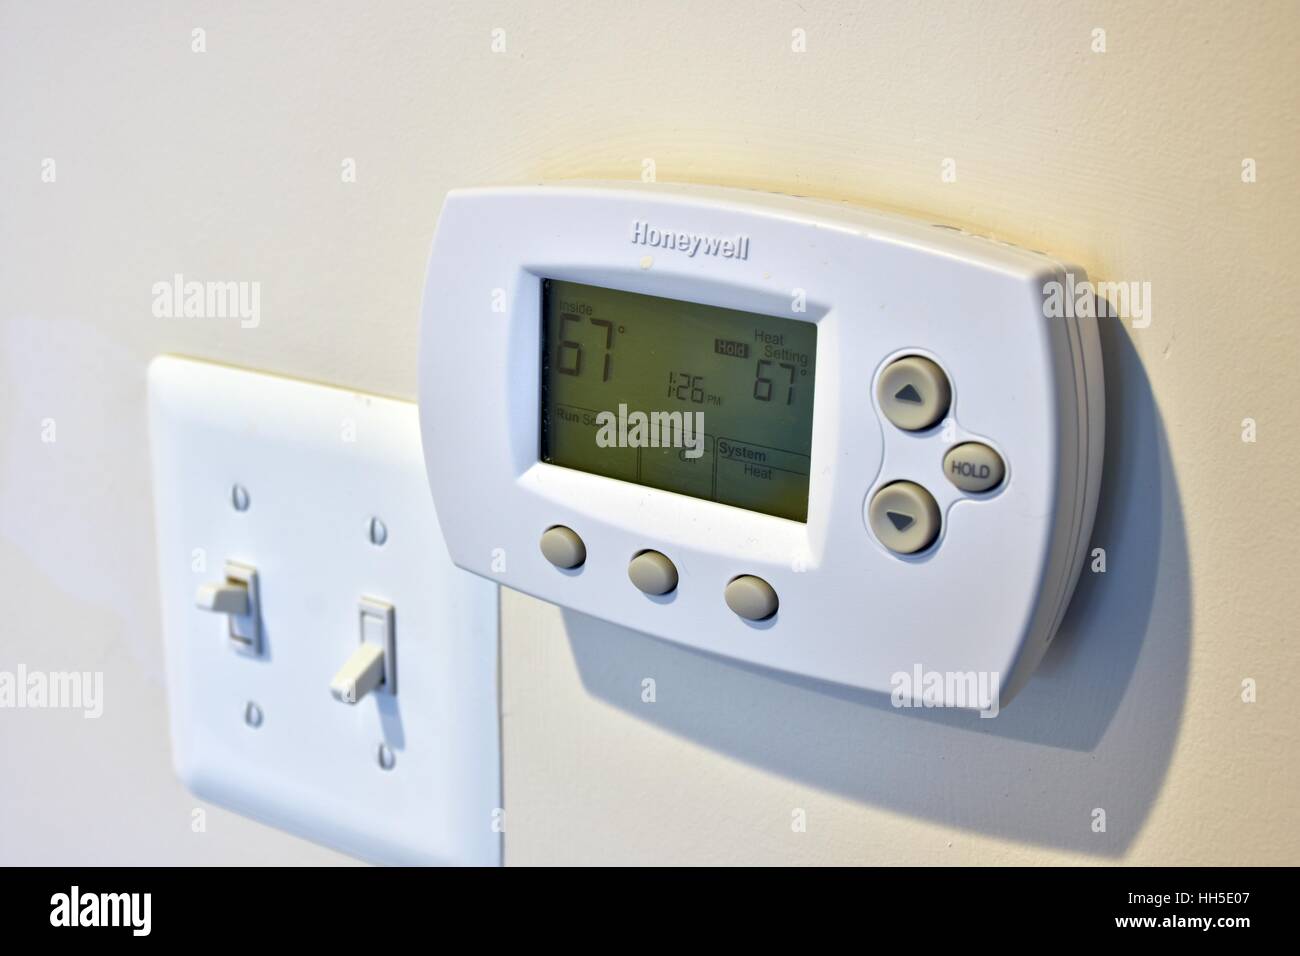 Termostato para calefacción - SIMPLE - Honeywell - electrónico / manual /  de pared